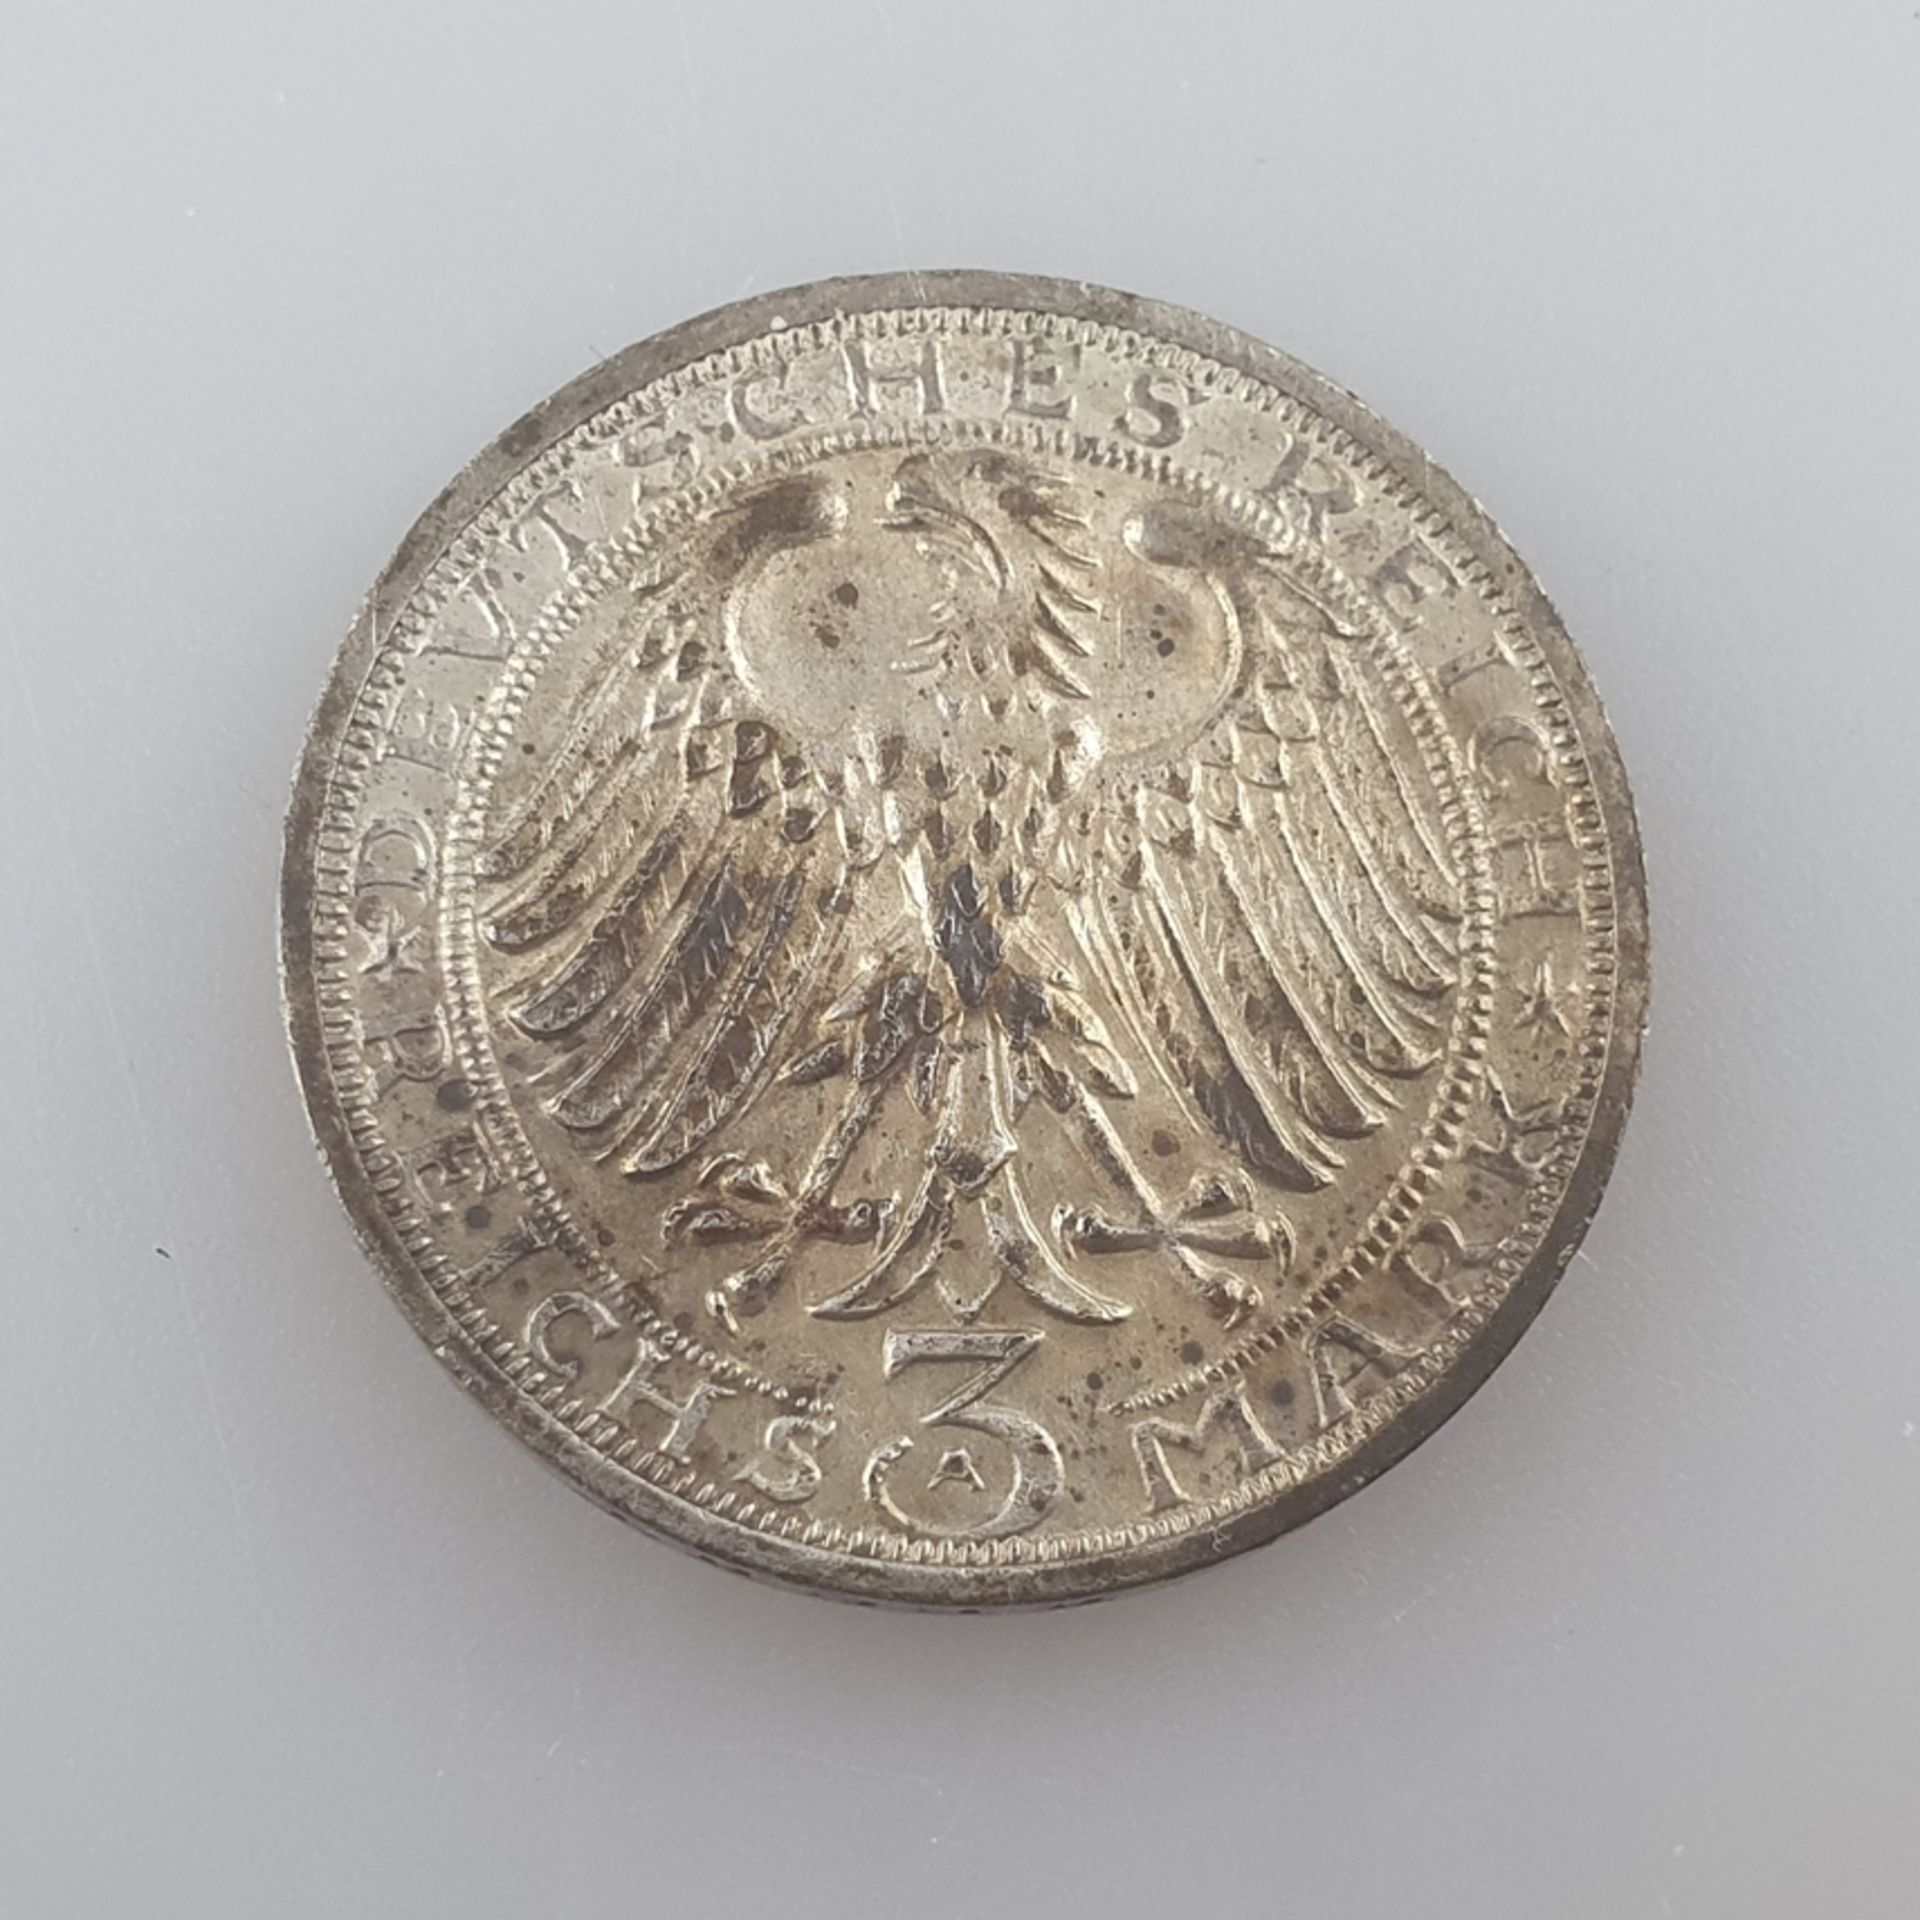 Silbermünze 3 Reichsmark 1928 - Weimarer Republik, 900 Jahre Naumburg, 500/000 Silber, Dm. 30 mm, - Image 2 of 3